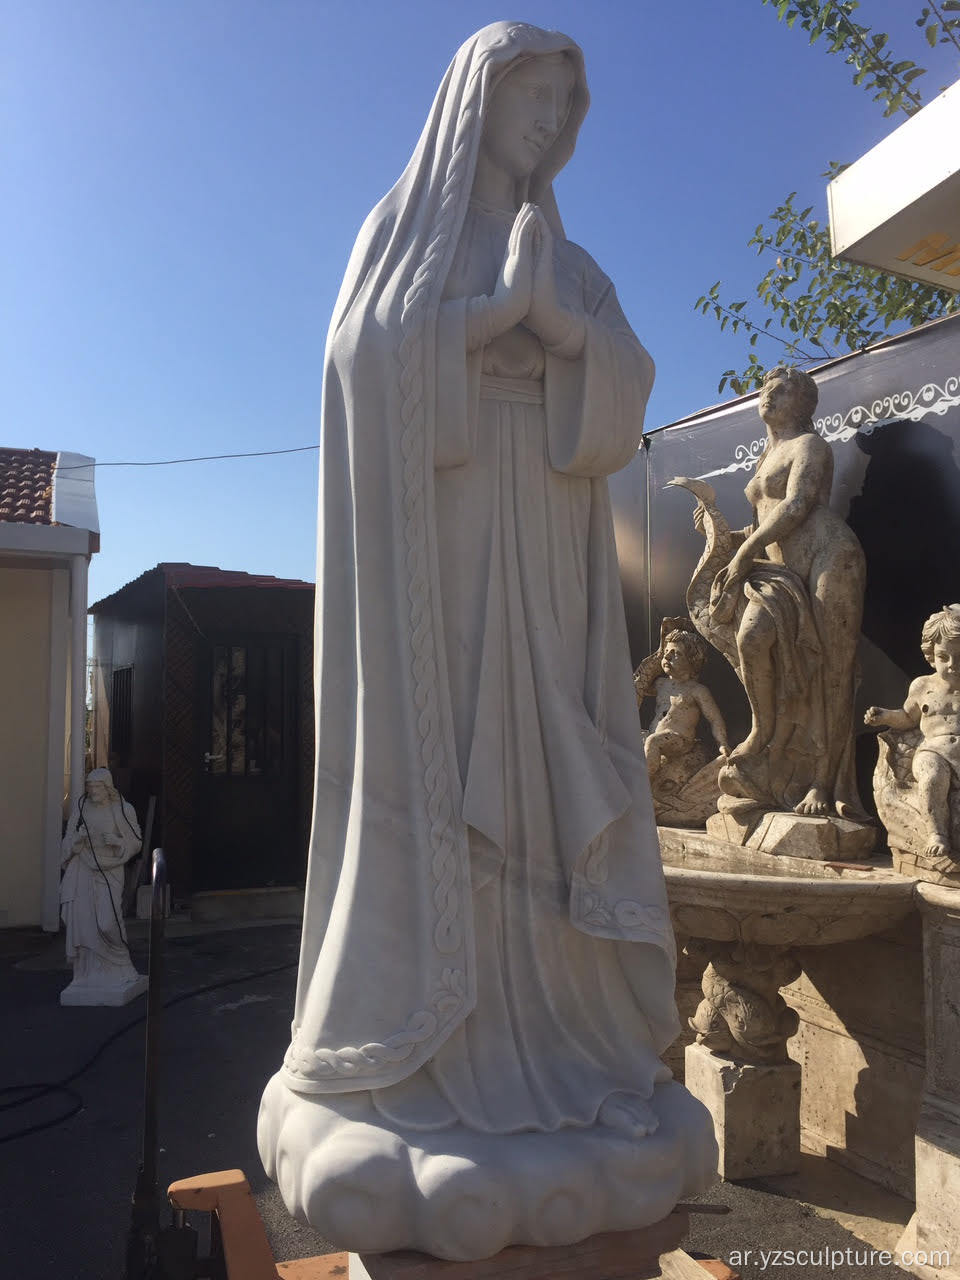 تمثال مريم العذراء الدينية الرخام الأبيض الحجم الكبير